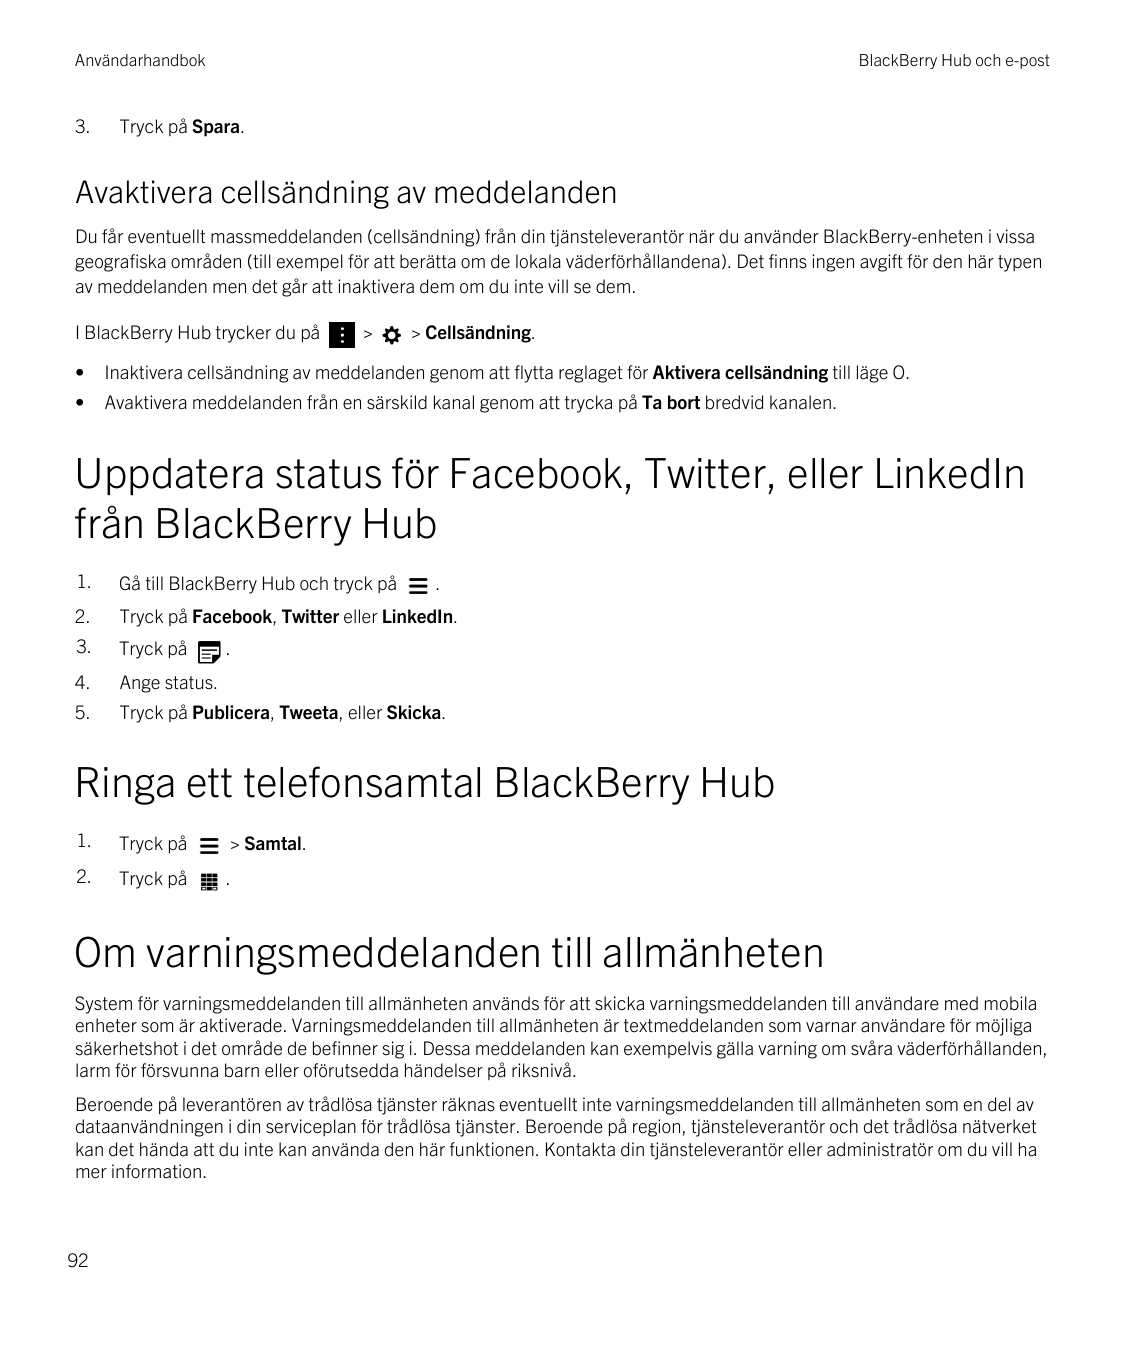 Användarhandbok3.BlackBerry Hub och e-postTryck på Spara.Avaktivera cellsändning av meddelandenDu får eventuellt massmeddelanden